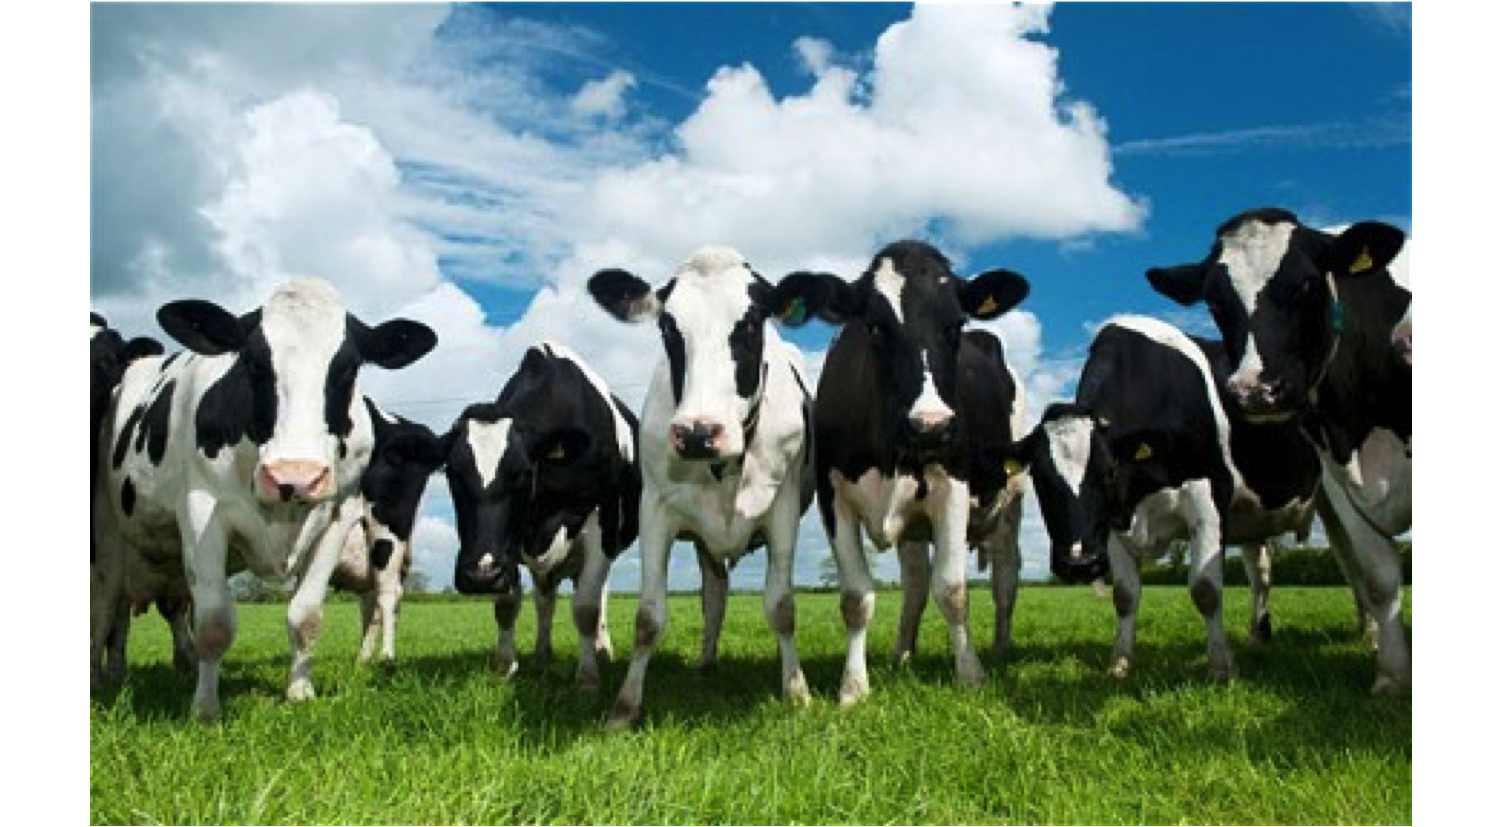 Dutch Farmer's Cows.jpg